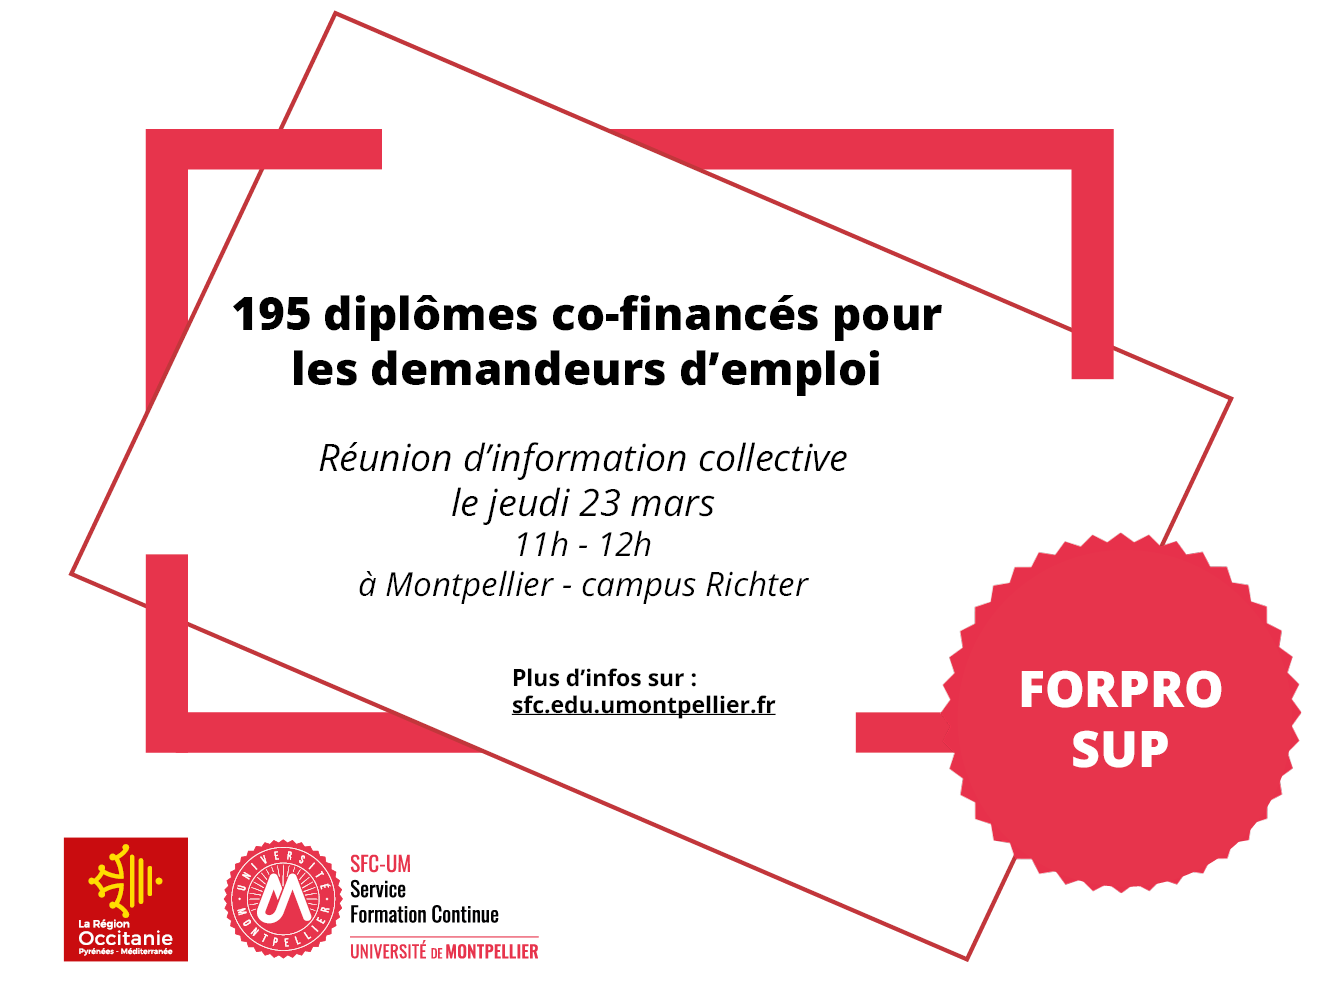 Réunion d'information collective FORPRO-SUP : 195 diplômes co-financés pour les demandeurs d'emploi